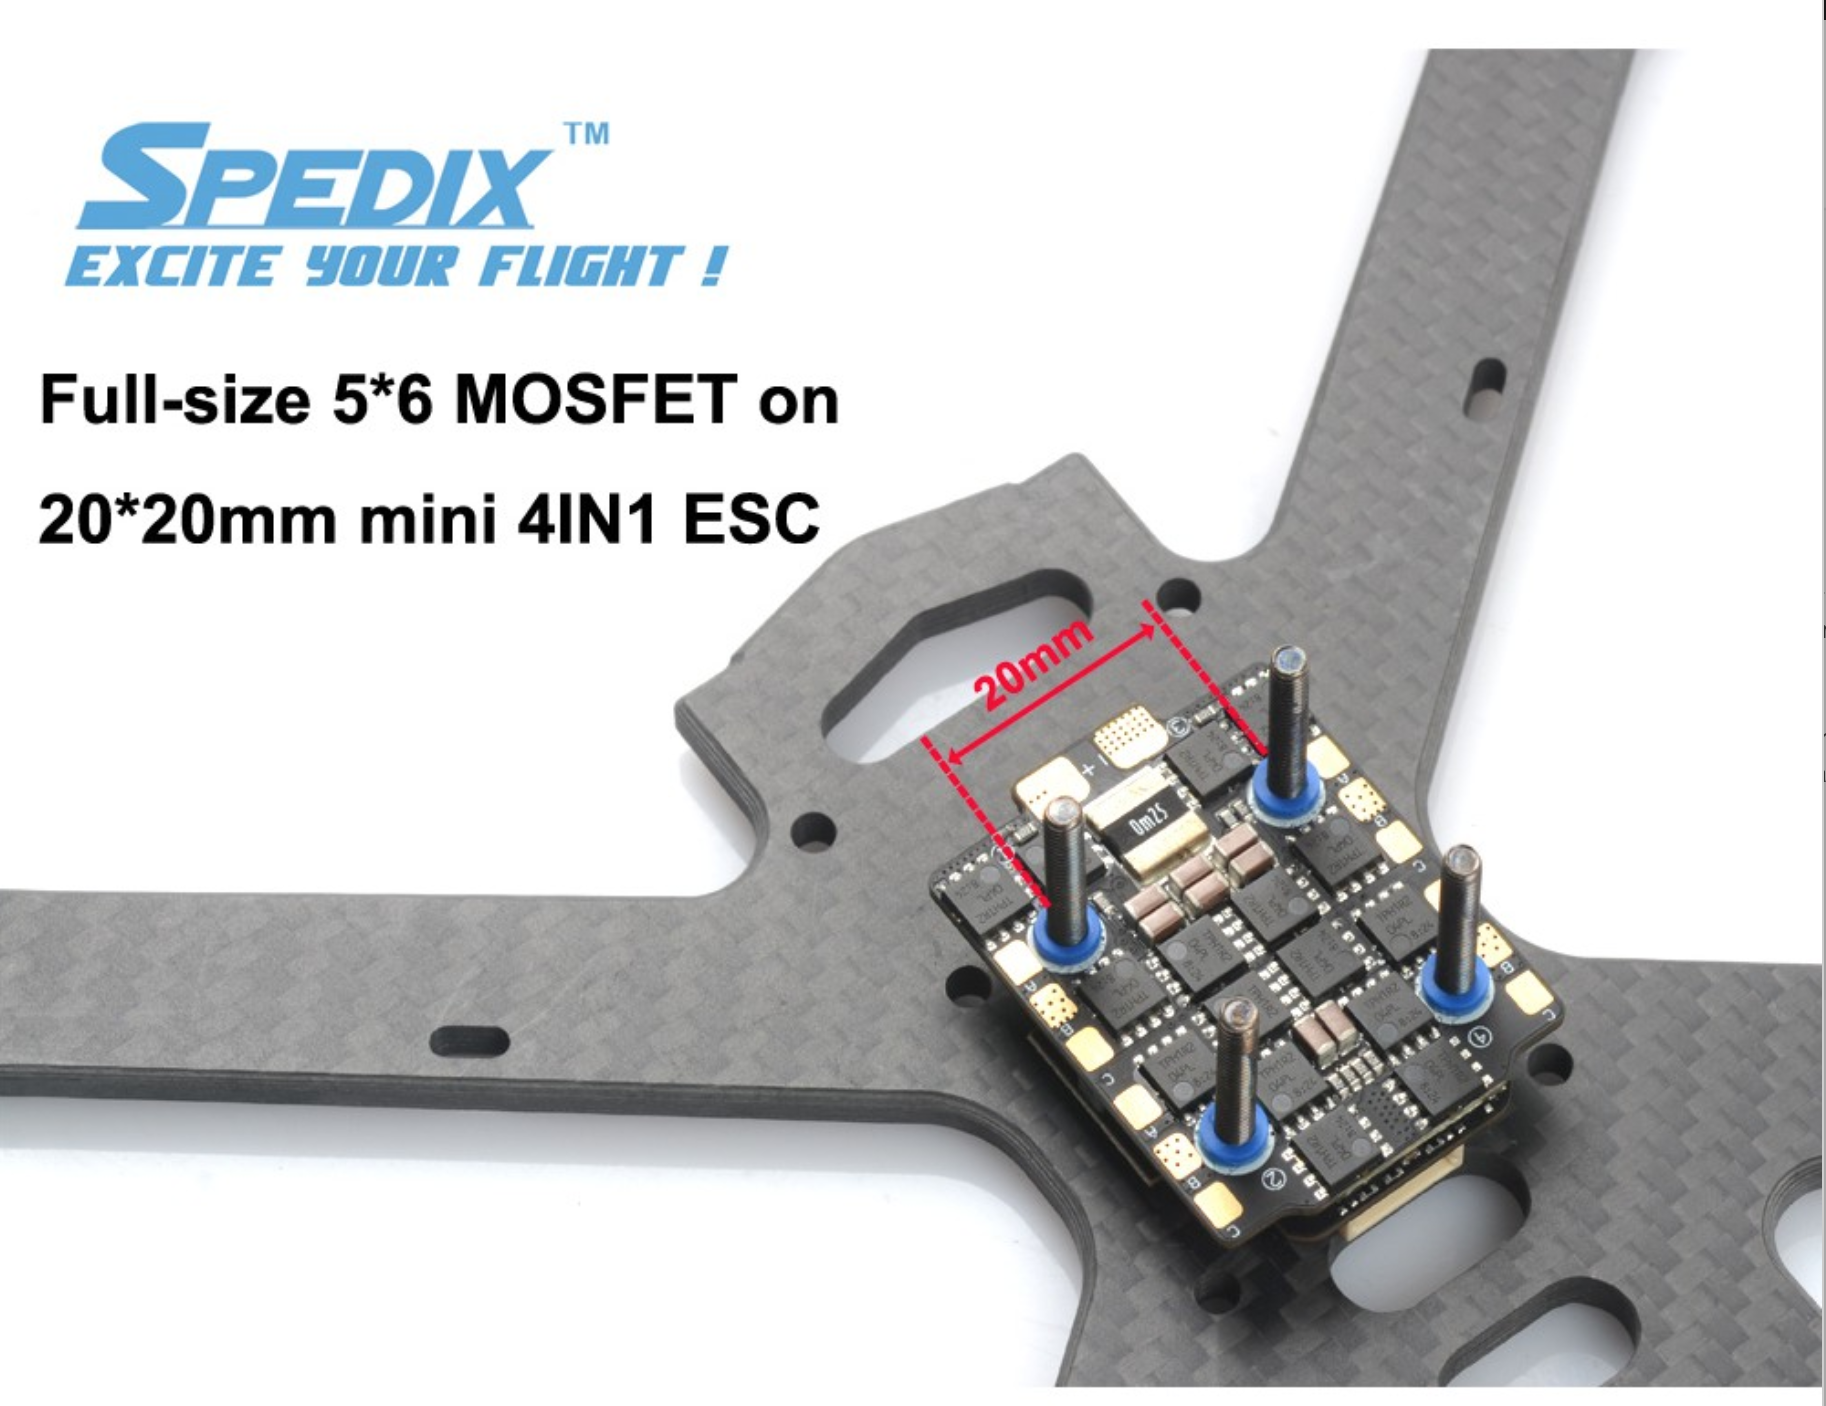 Spedix GS40F Mini 4 IN 1 ESC For FPV racing drones